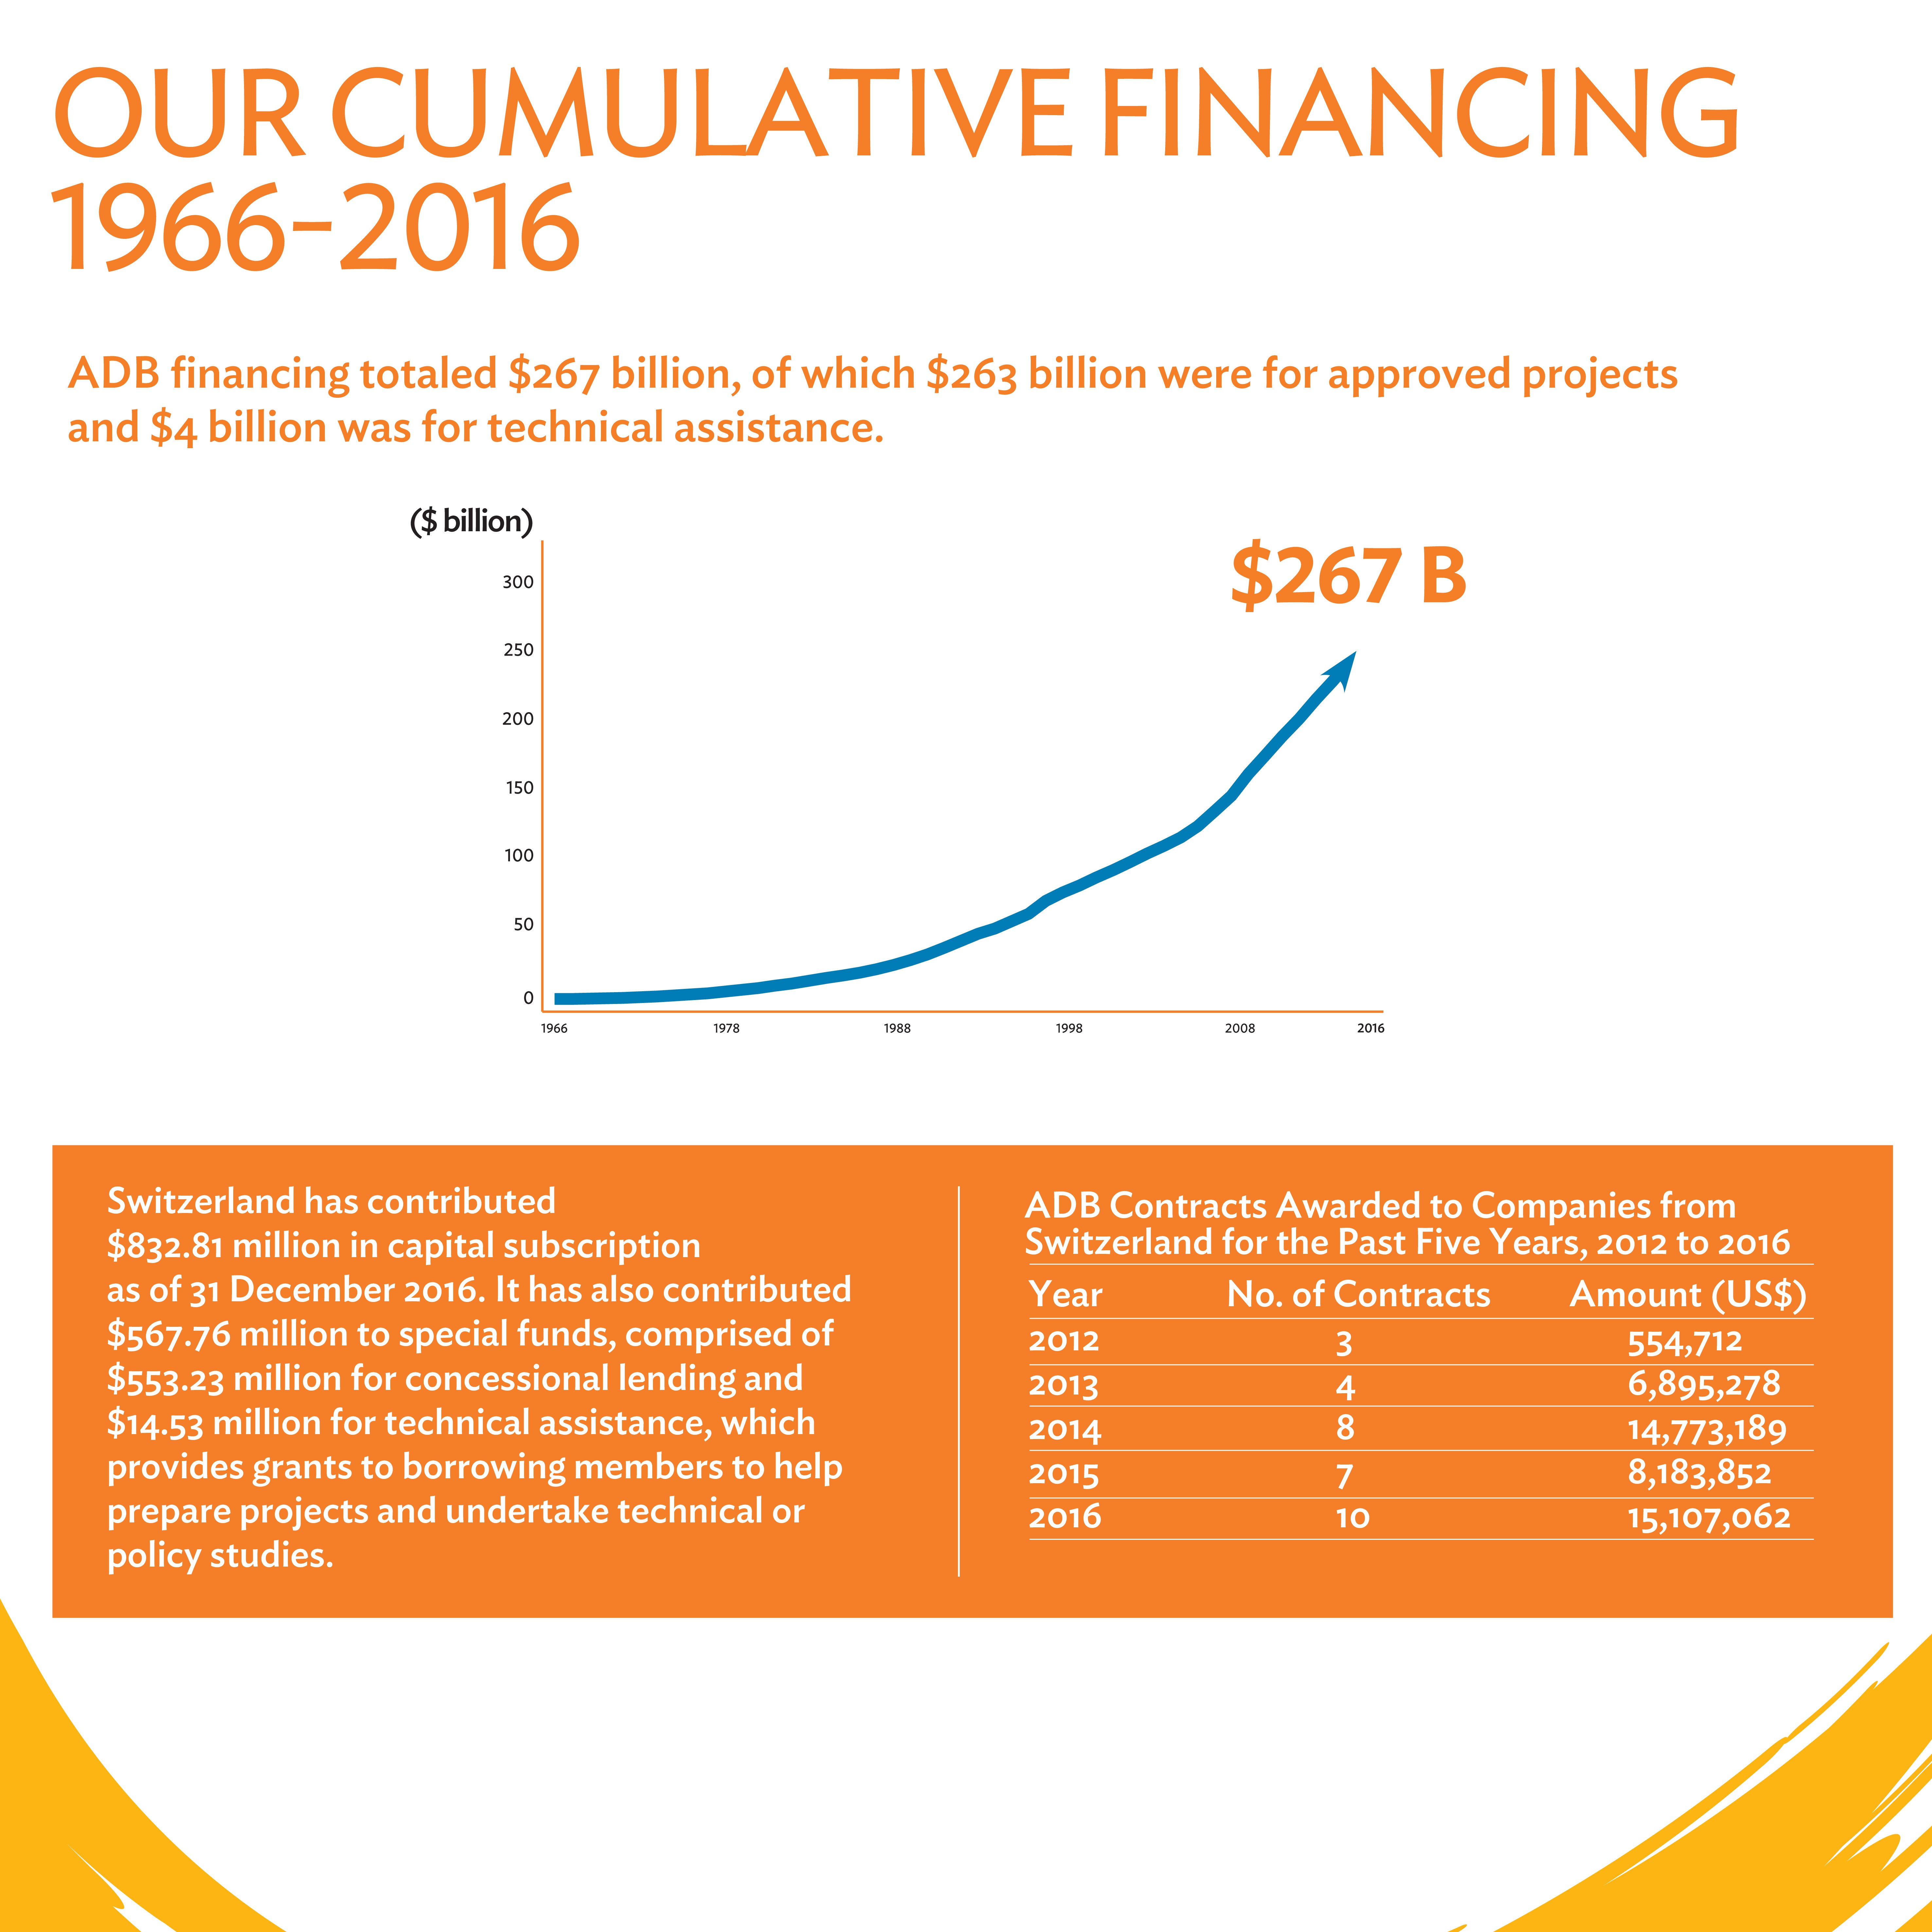 Cumulative Financing